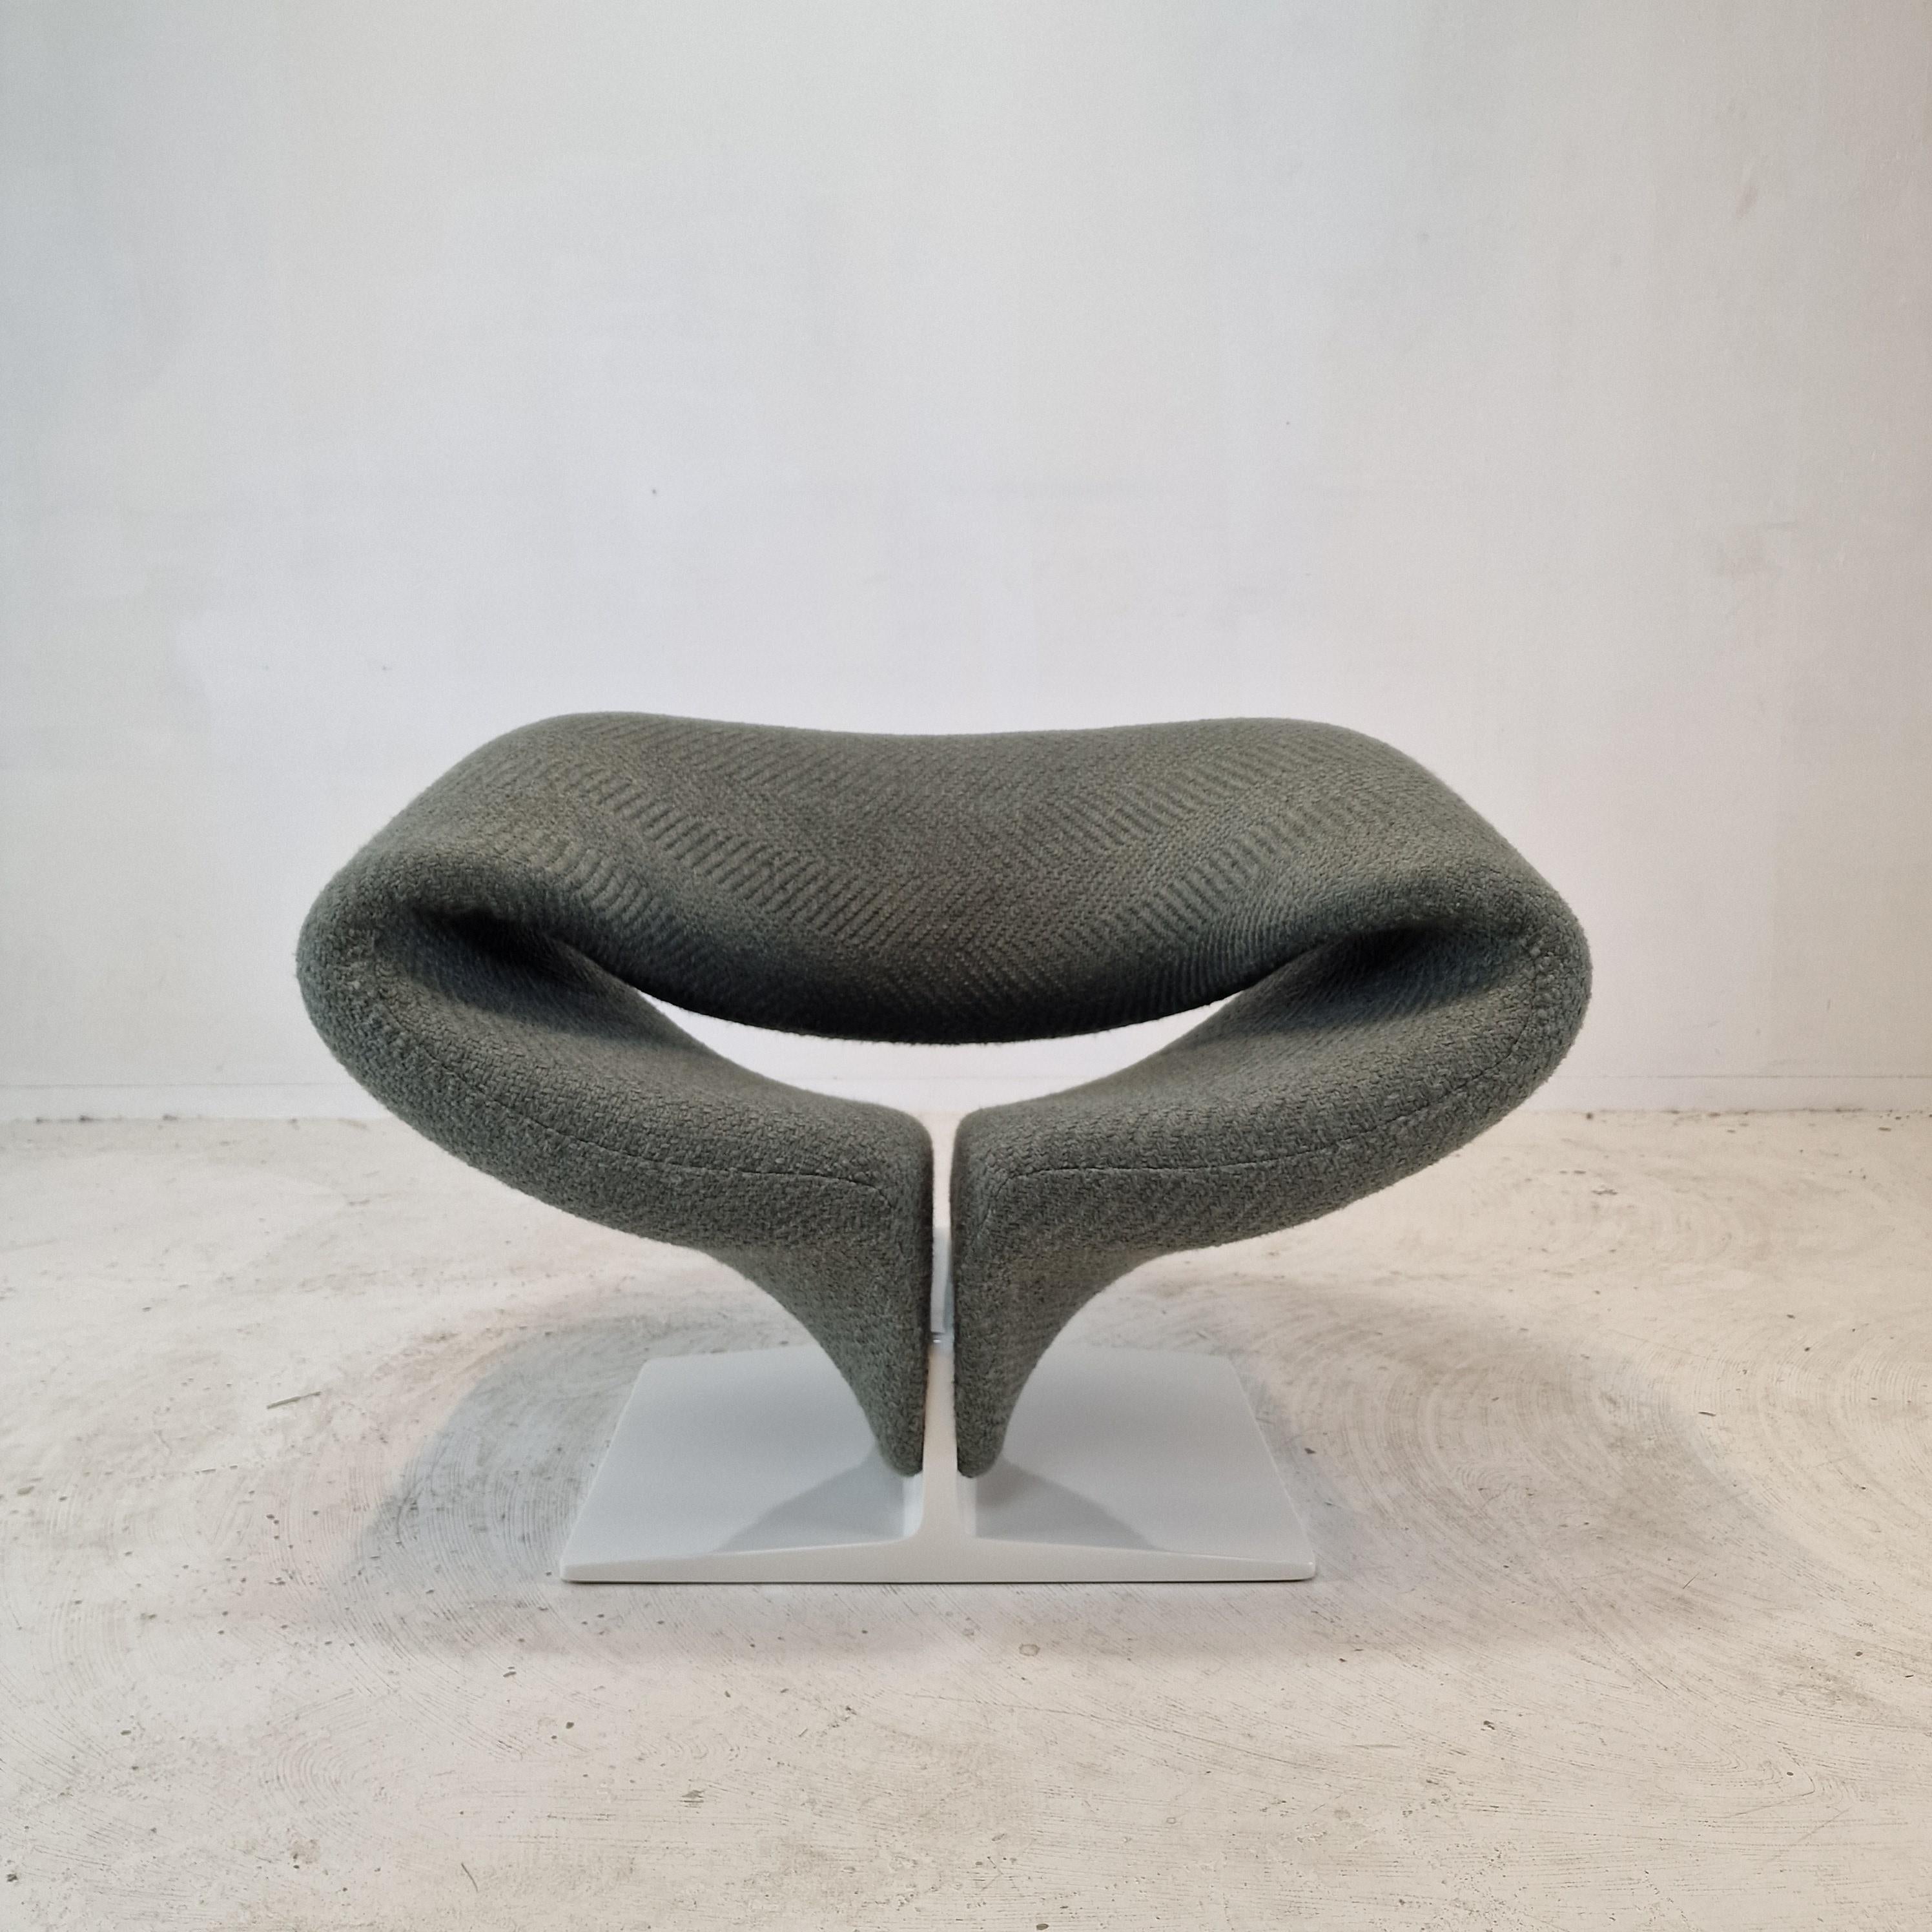 Atemberaubender Ribbon Chair, entworfen von dem französischen Designer Pierre Paulin in den 60er Jahren. 
Dieser originelle Stuhl wurde in den 60er Jahren von Artifort in den Niederlanden hergestellt. 
Der Ribbon Chair ist ein Kunstwerk und